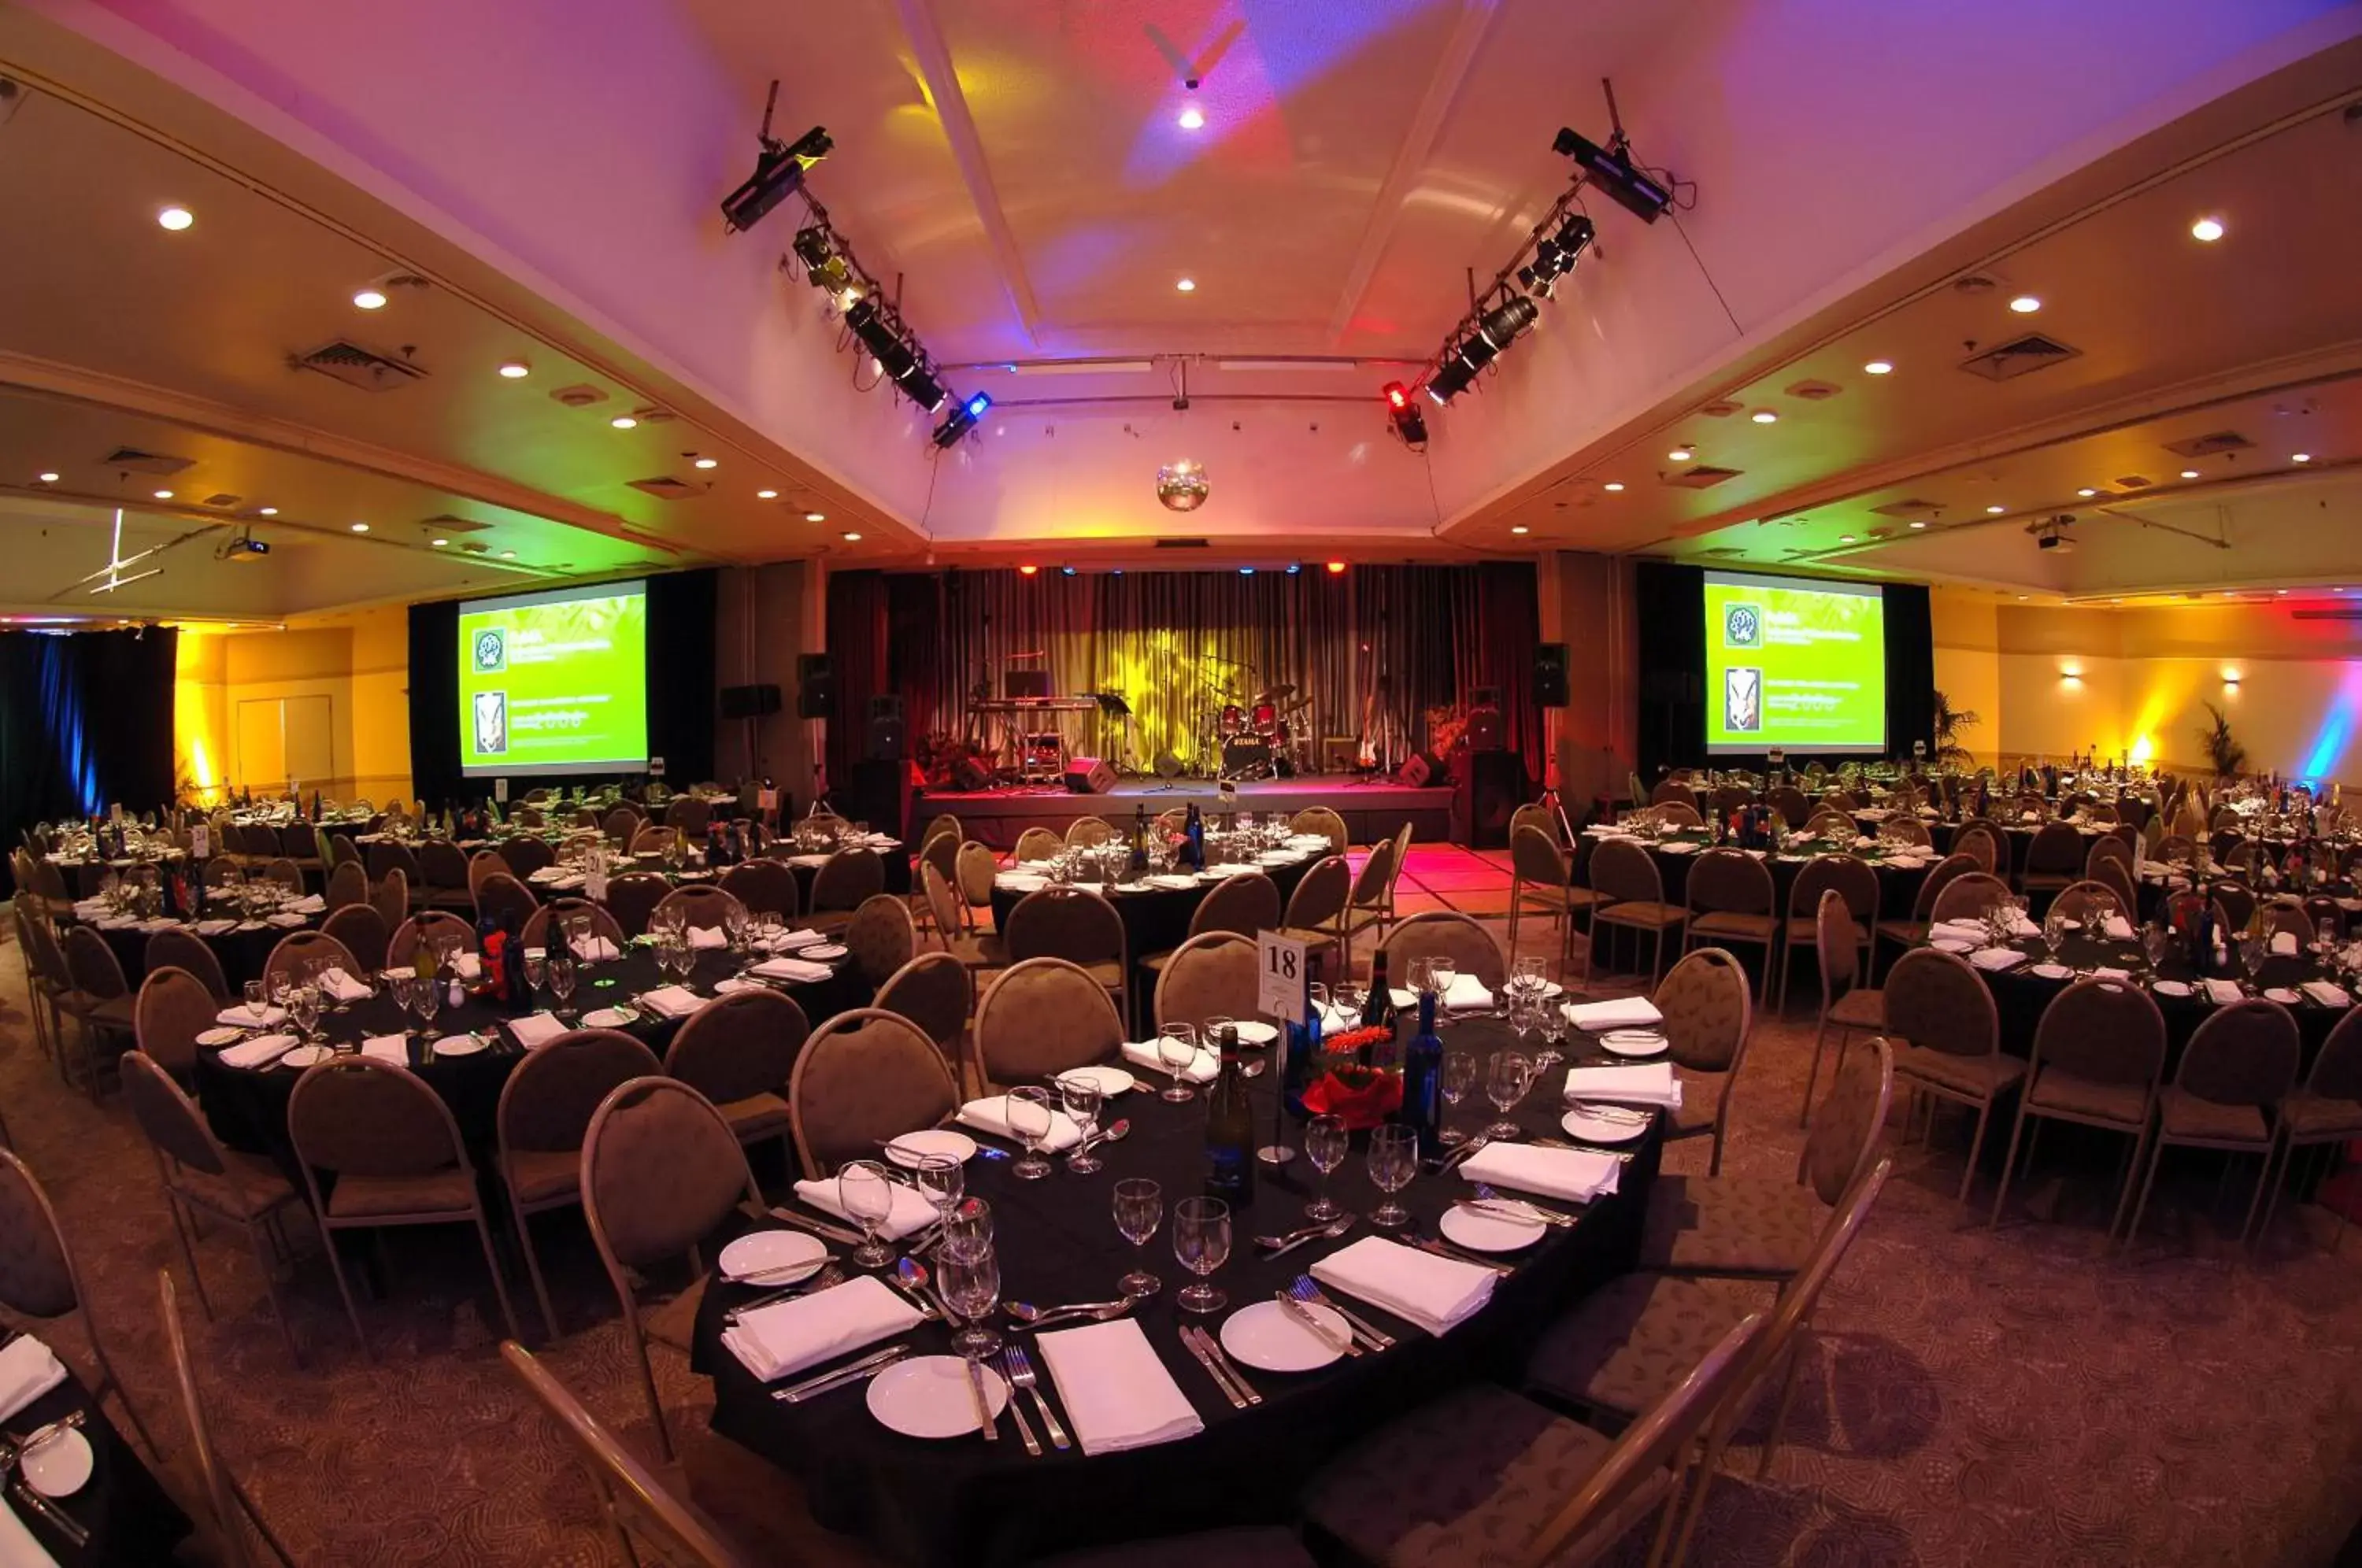 Banquet/Function facilities, Banquet Facilities in Distinction Hotel Rotorua